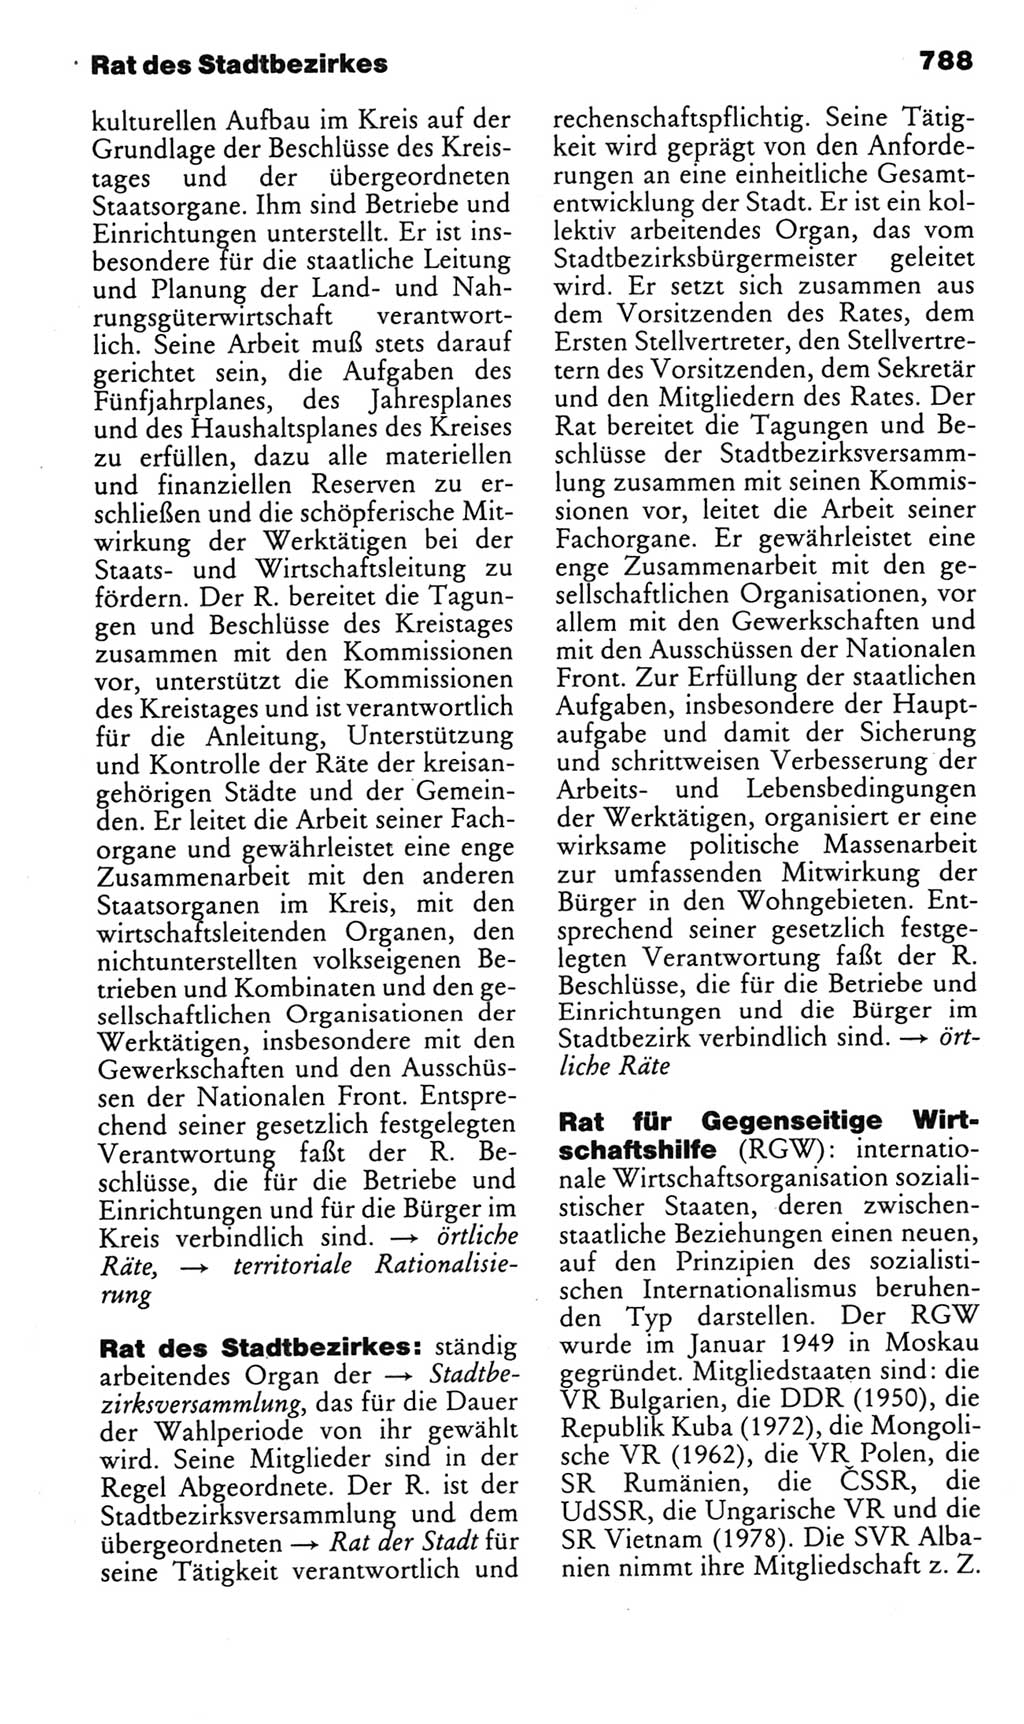 Kleines politisches Wörterbuch [Deutsche Demokratische Republik (DDR)] 1985, Seite 788 (Kl. pol. Wb. DDR 1985, S. 788)